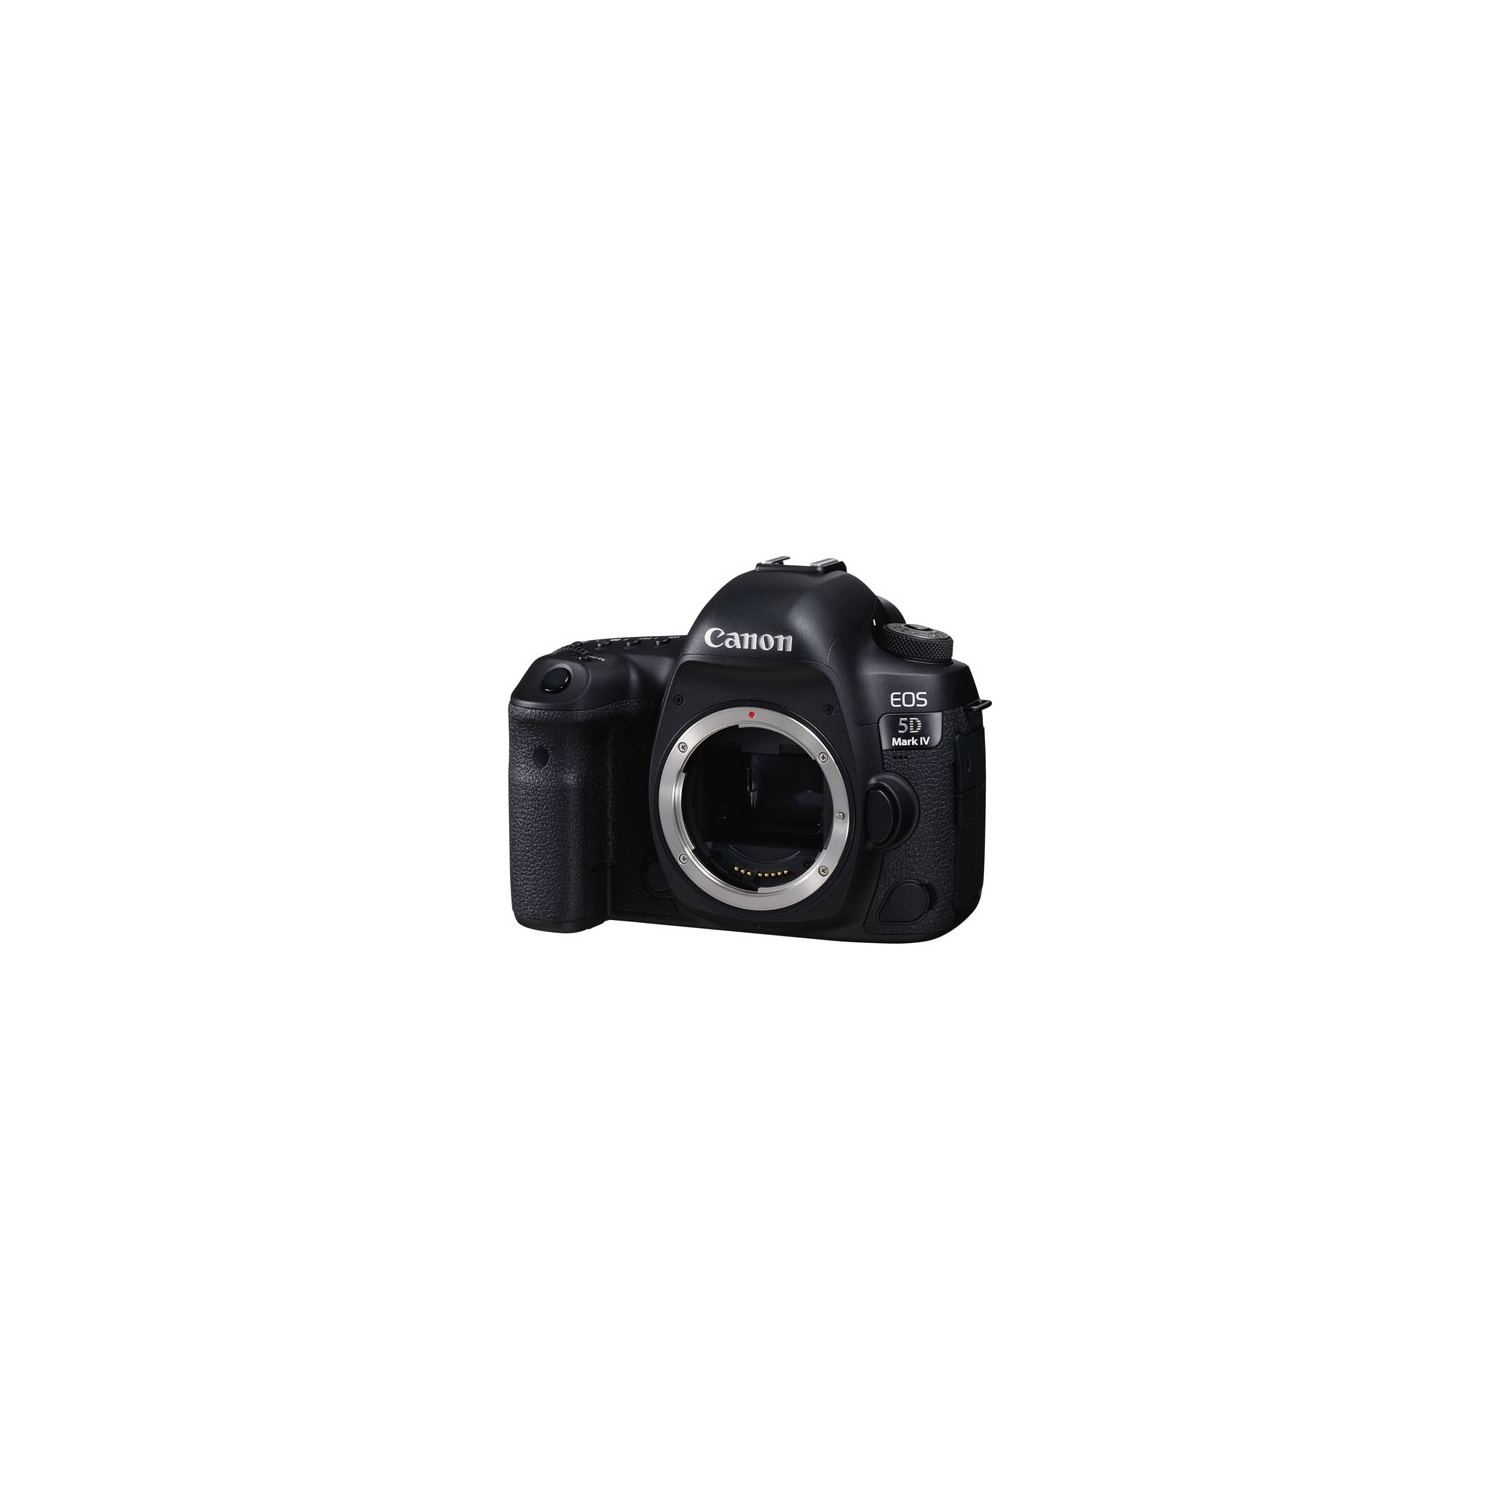 Refurbished (Fair) - Canon EOS 5D Mark IV Full Frame DSLR Camera (Body Only)